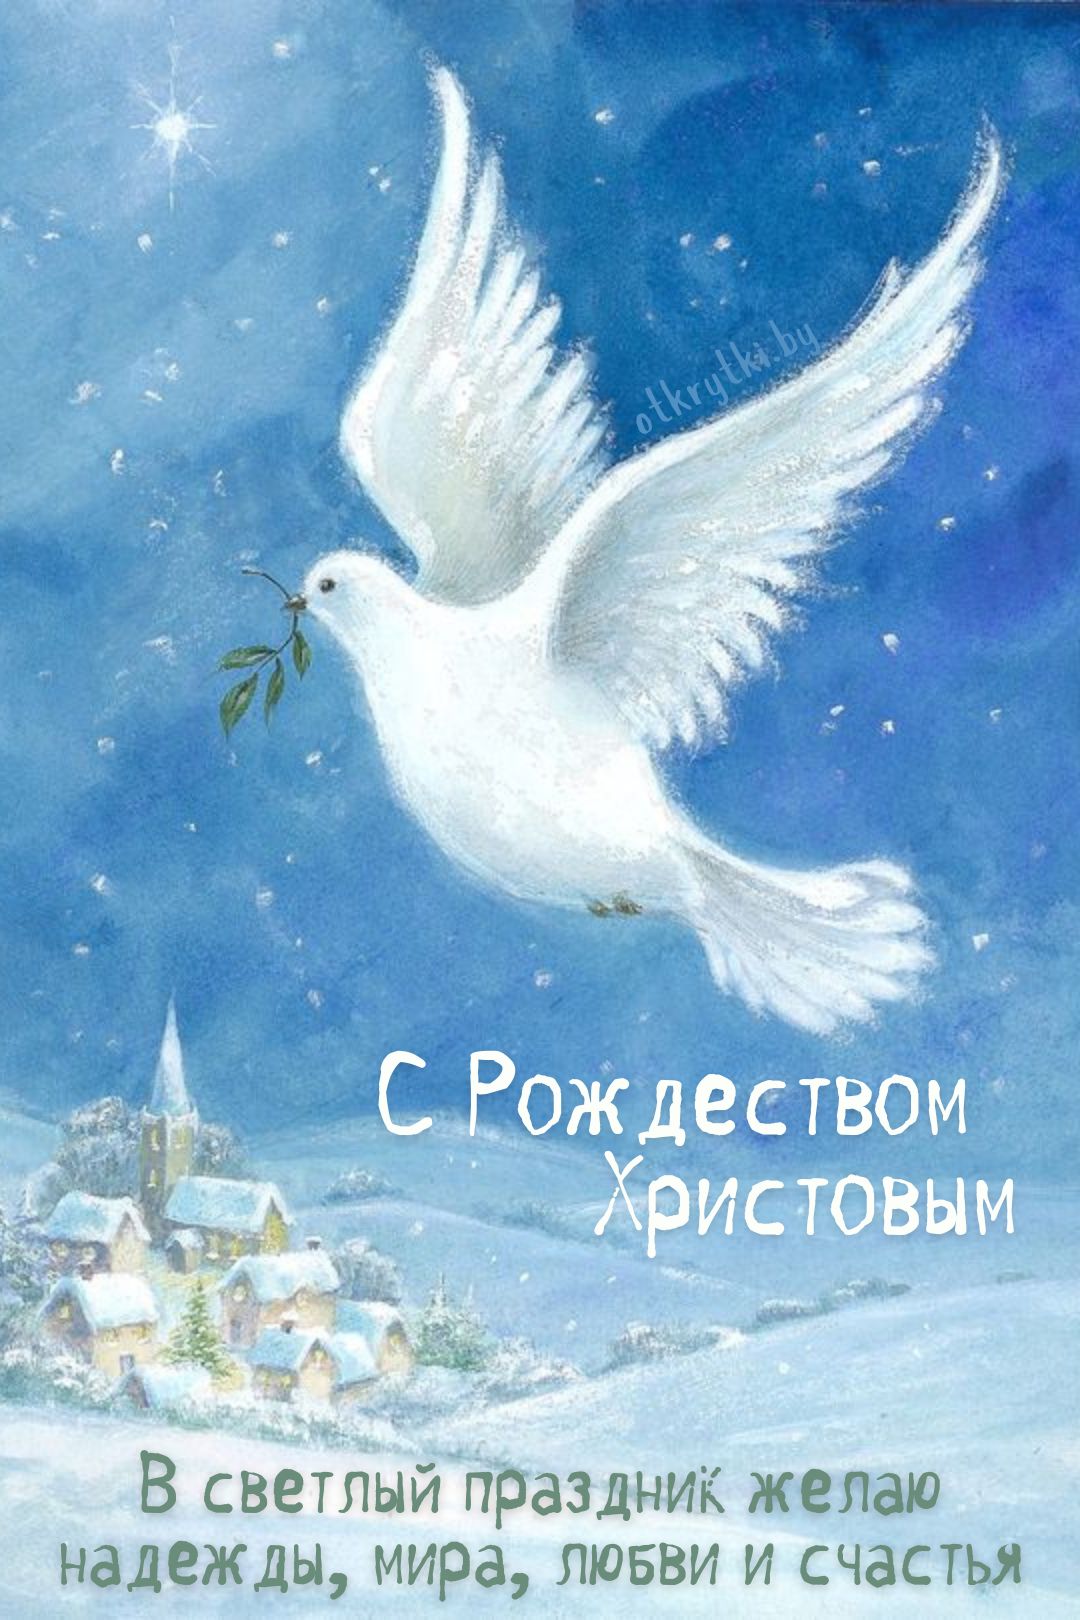 Открытка с Рождеством Христовым и голубем